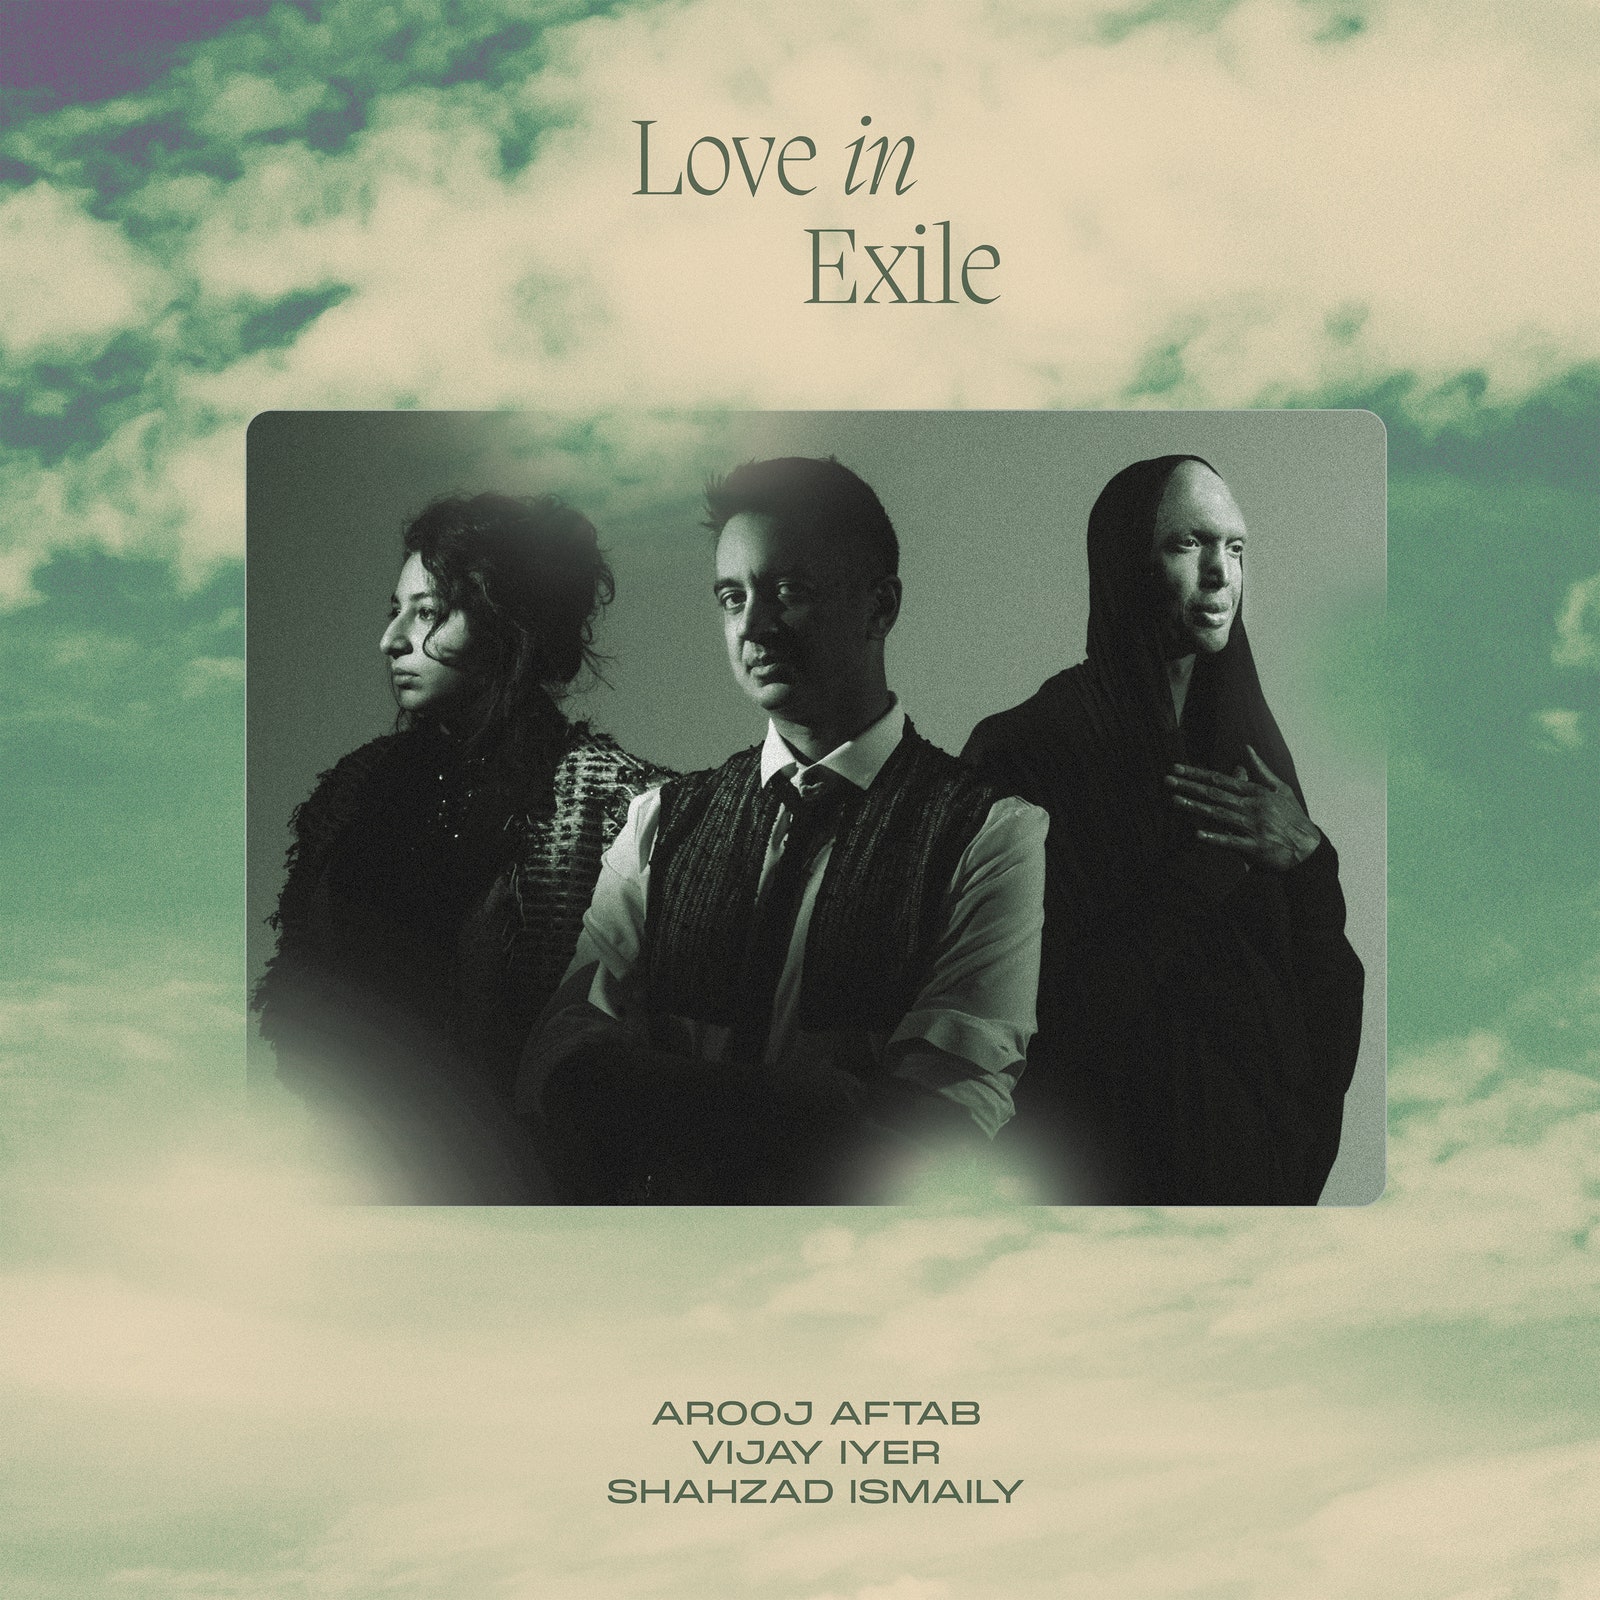 Love in Exile album cover